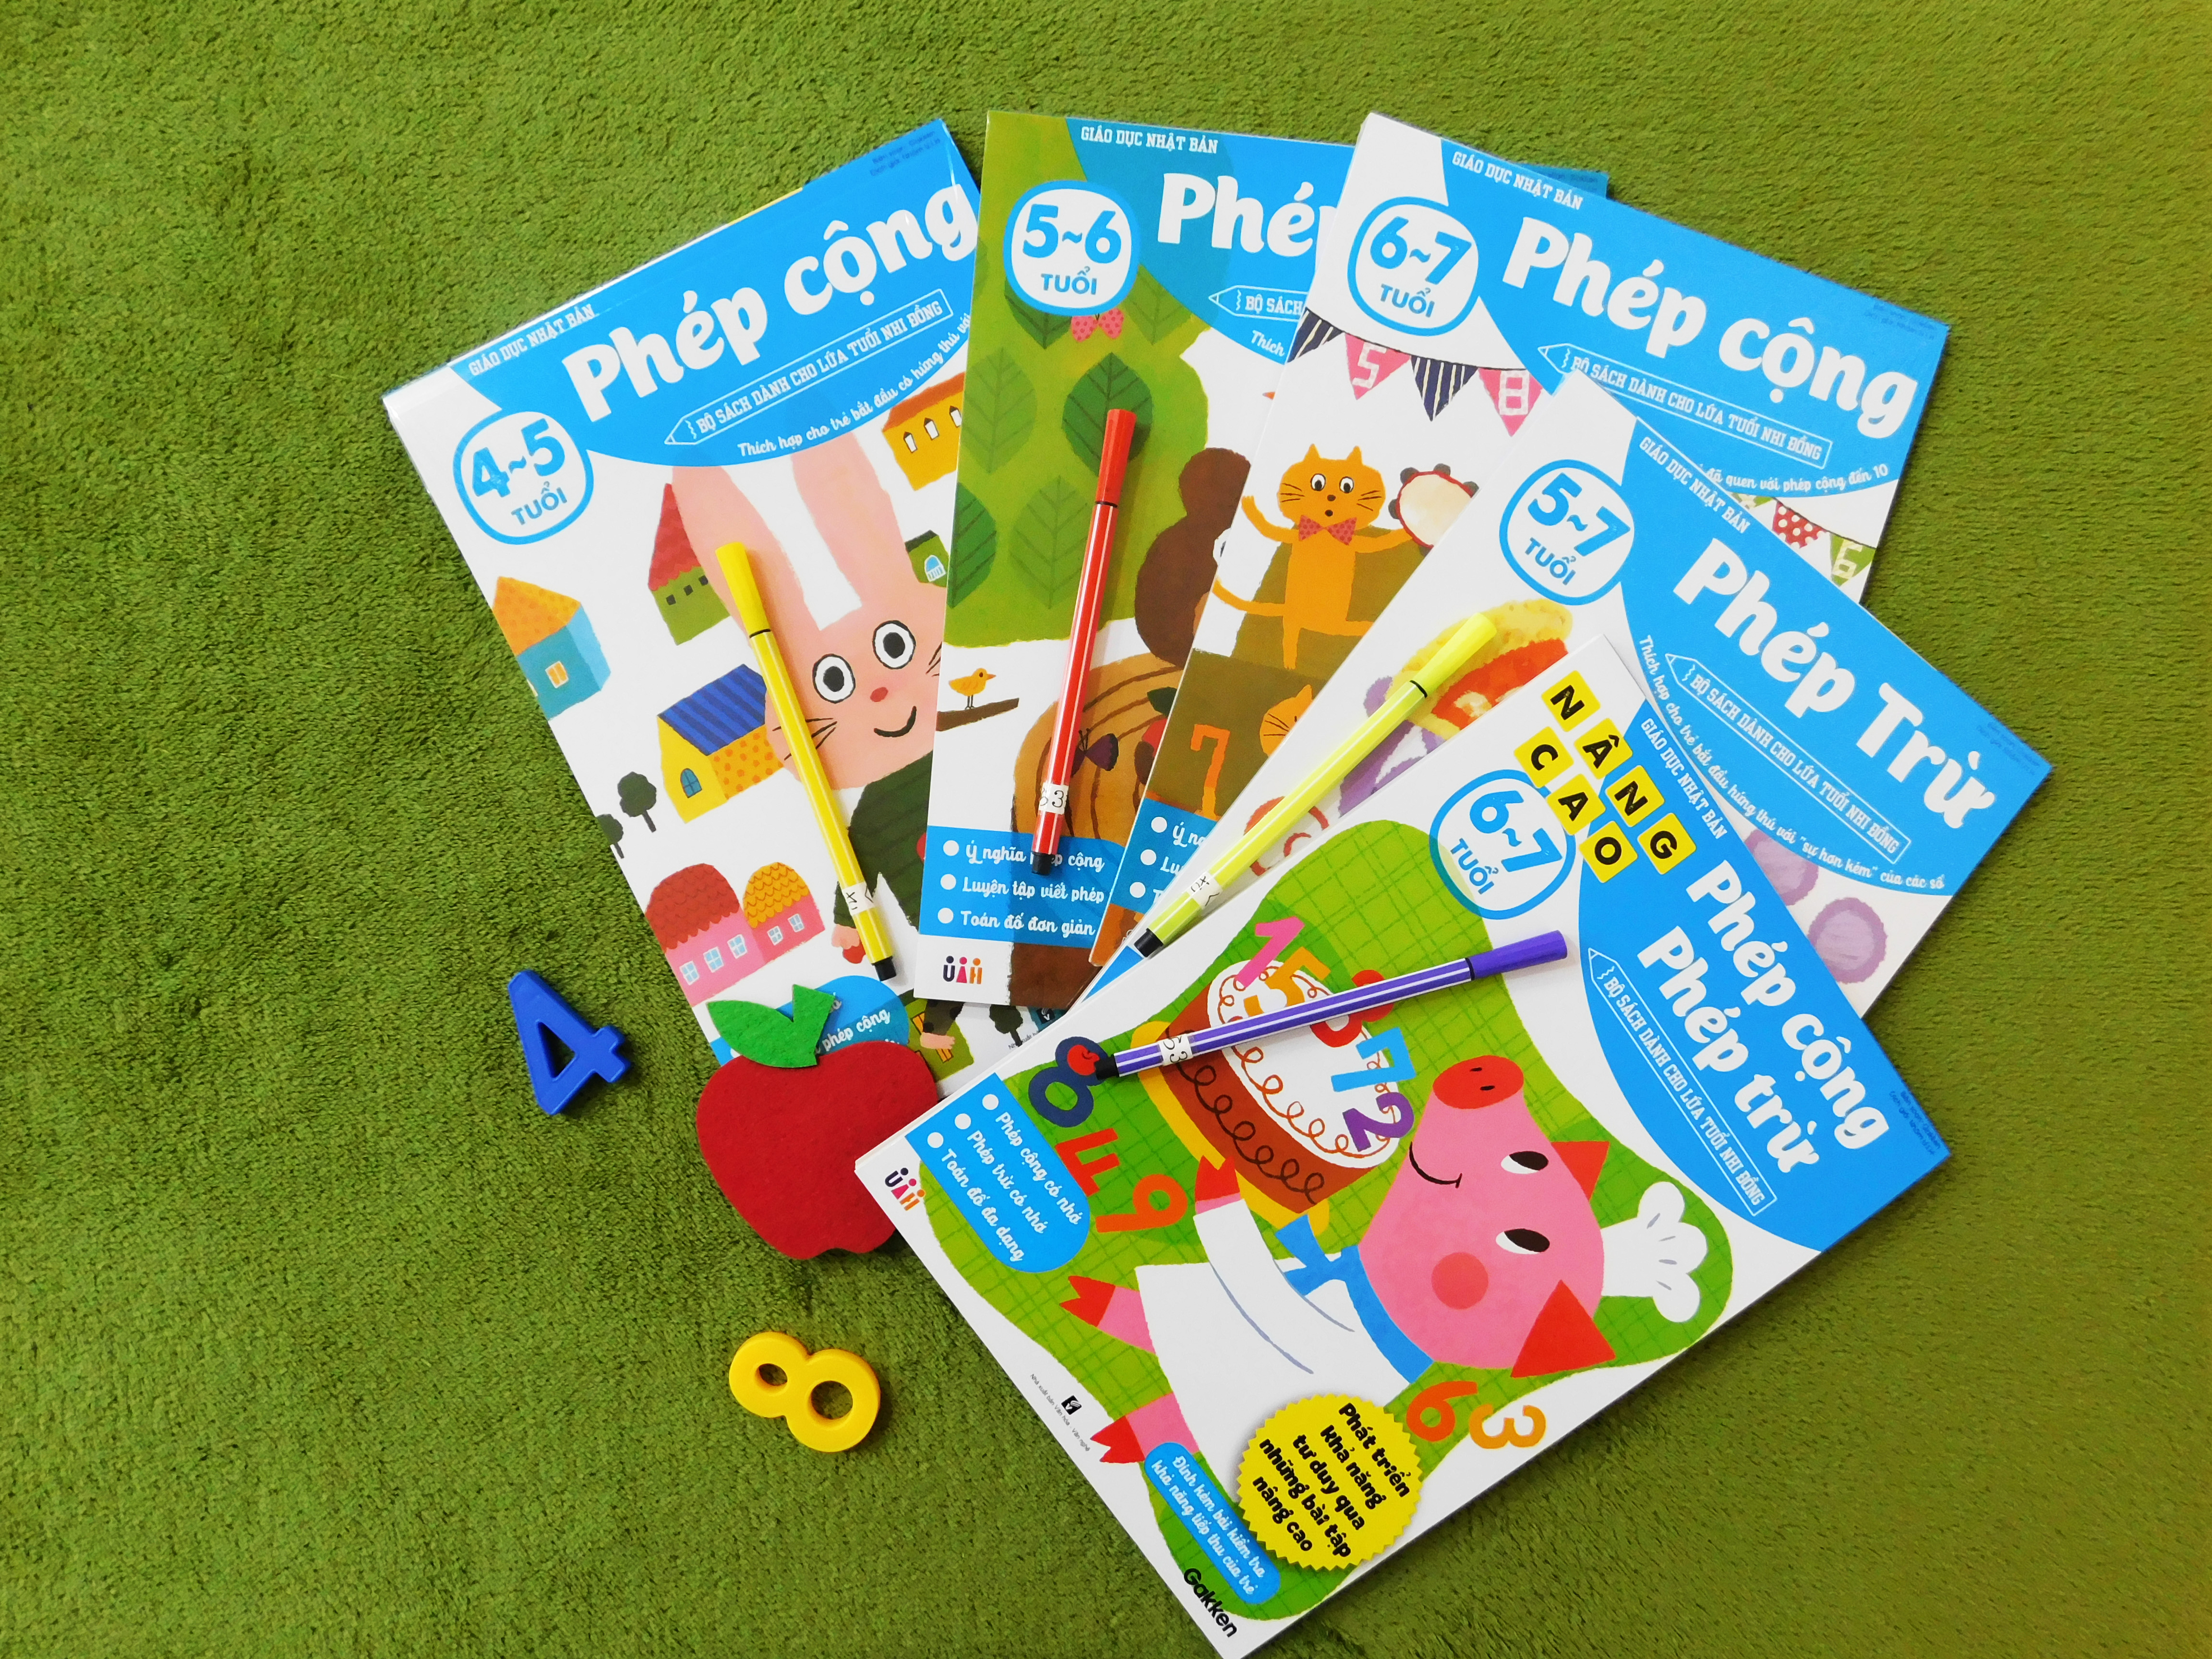 Phép cộng (5~6 tuổi) - Giáo dục Nhật Bản - Bộ sách dành cho lứa tuổi nhi đồng - Thích hợp cho trẻ bắt đầu có hứng thú với phép cộng